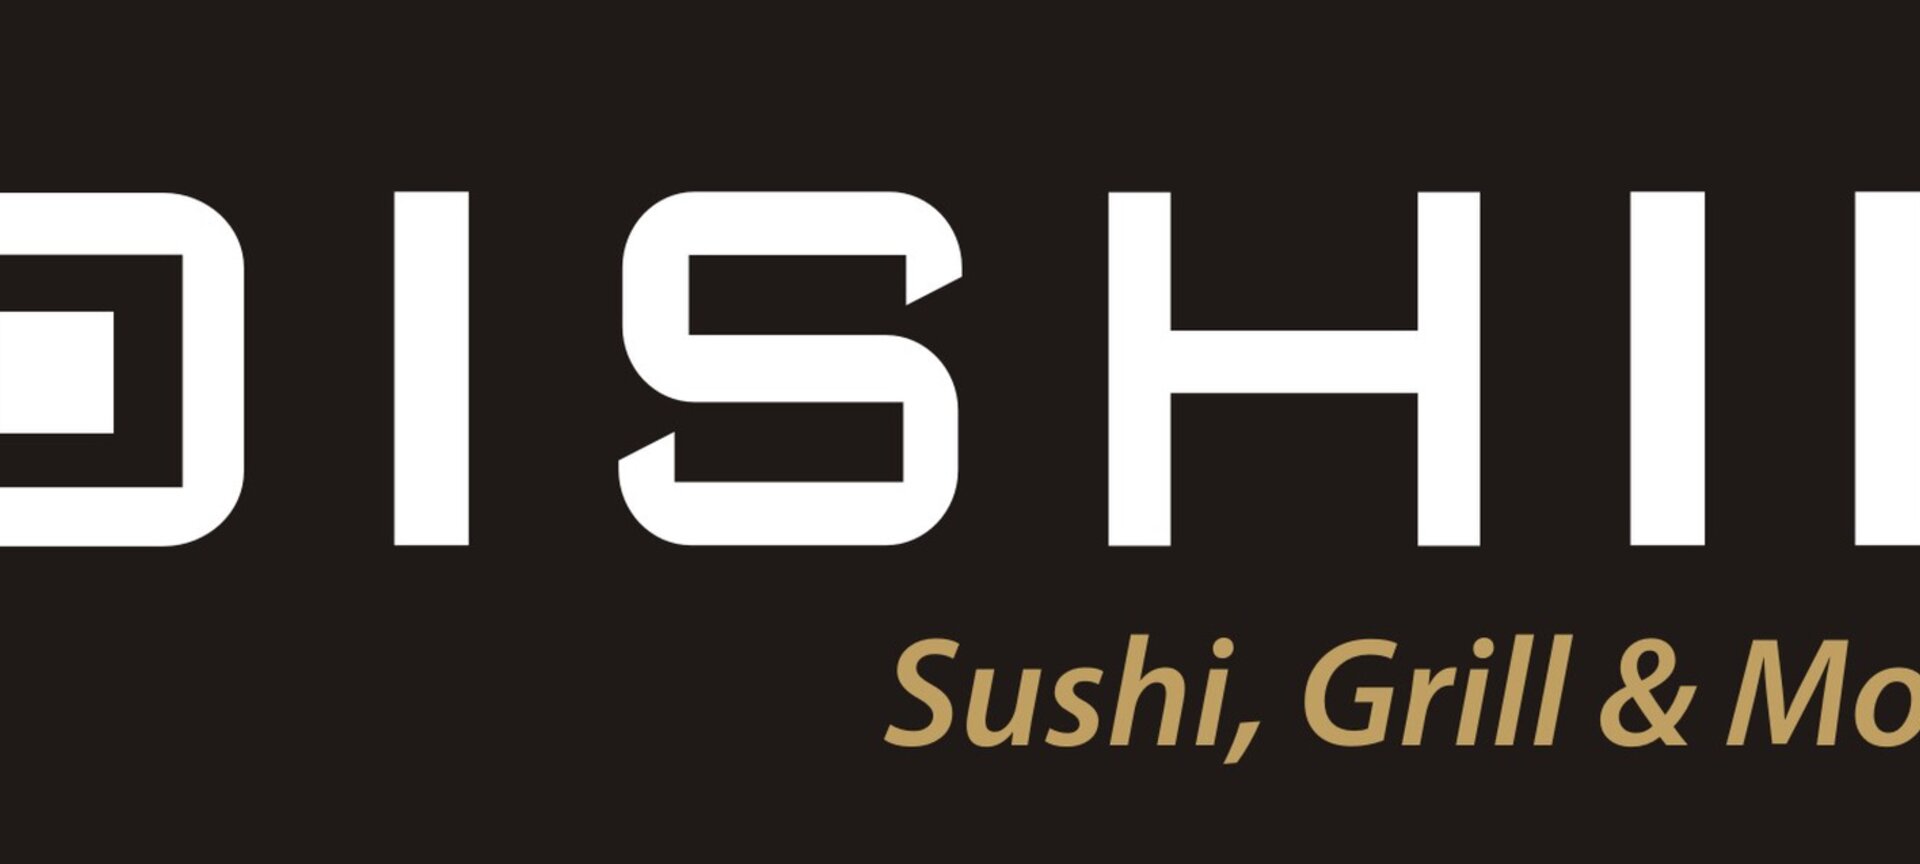 Oishii - Sushi, Grill & More - Oishii - Sushi, Grill & More